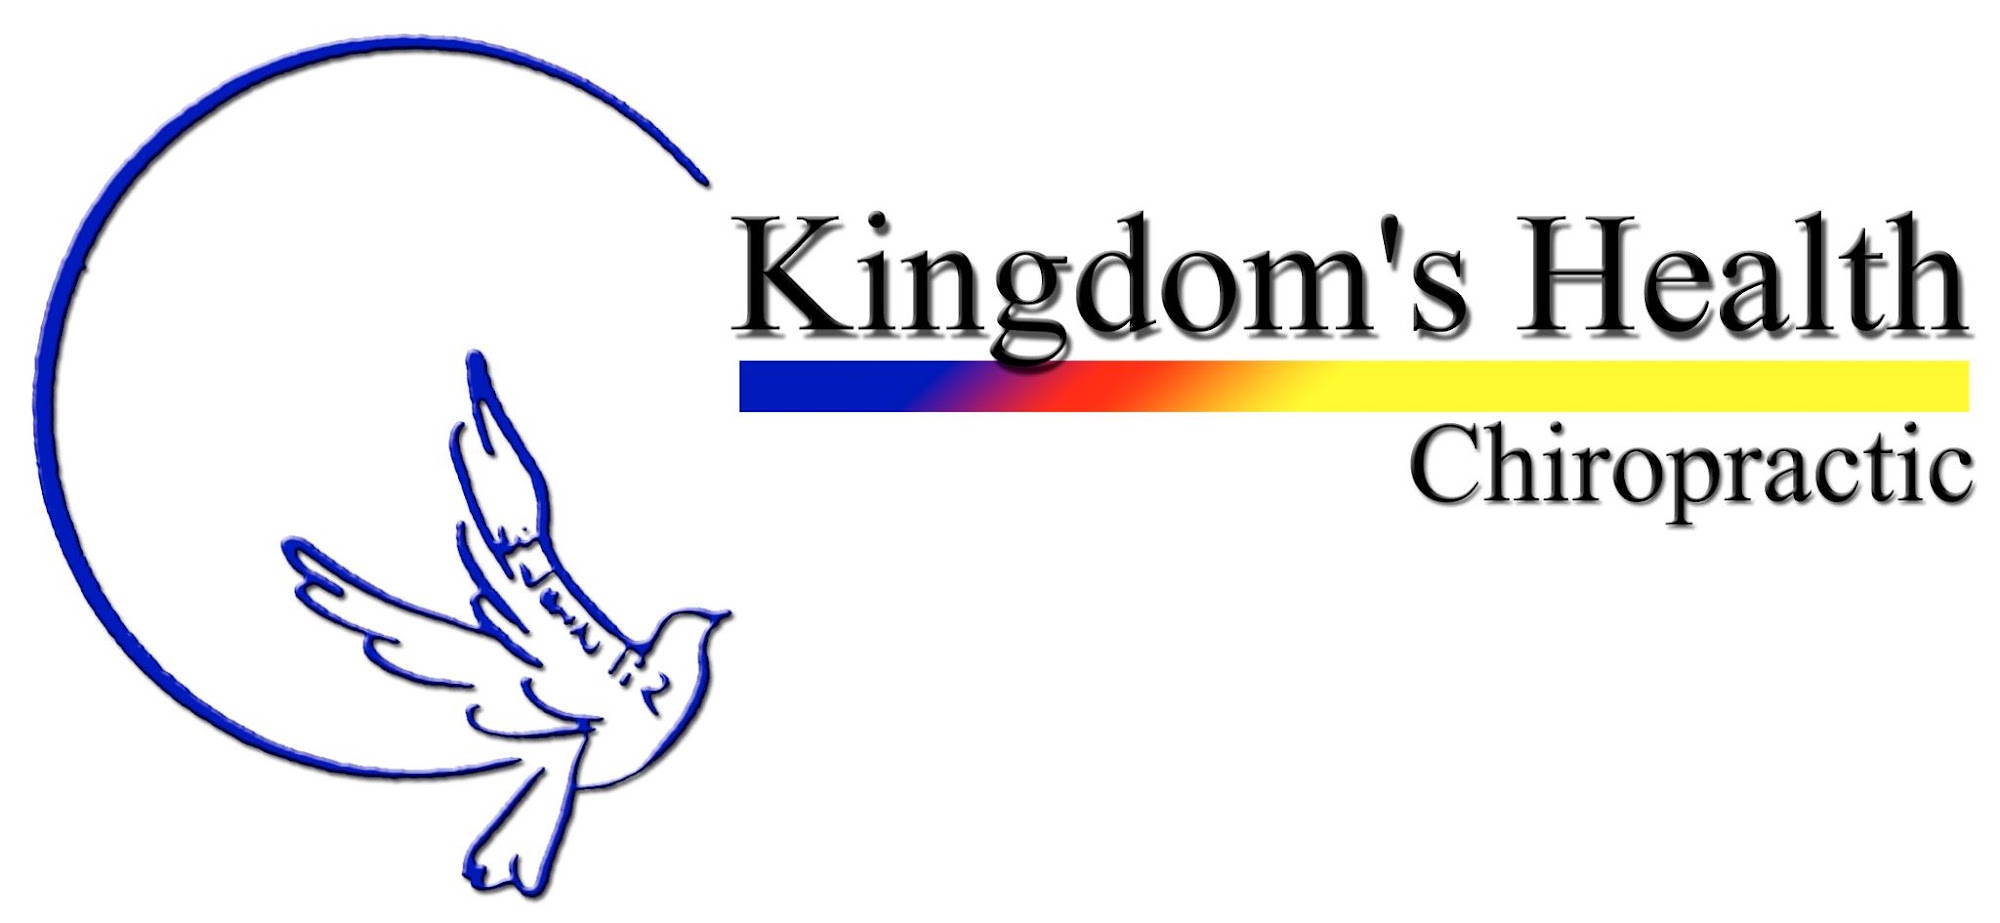 Kingdom's Health Chiropractic